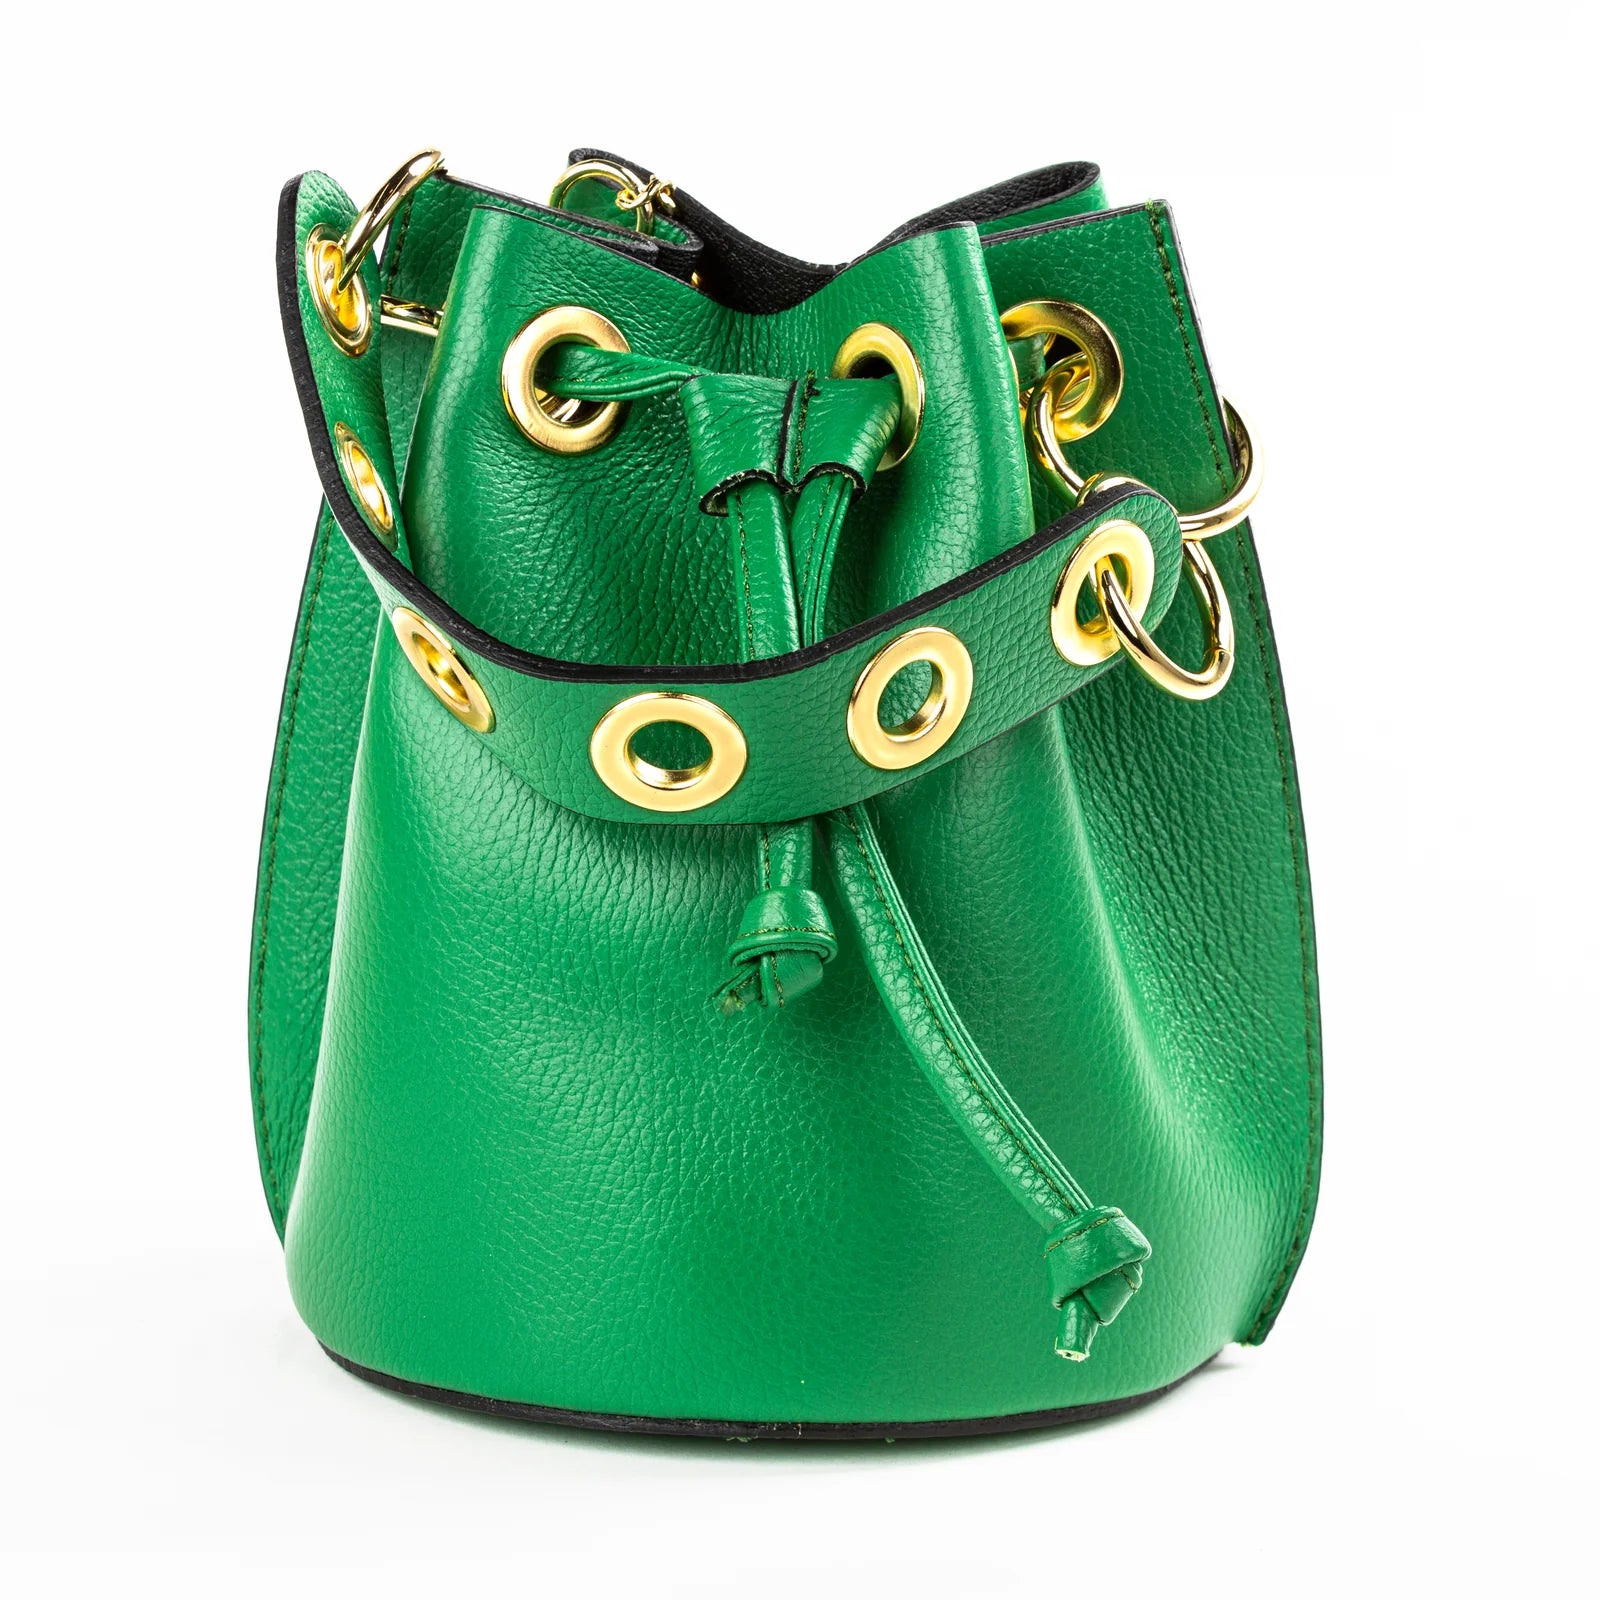 Gabriella Kelly Green Leather Bucket Bag